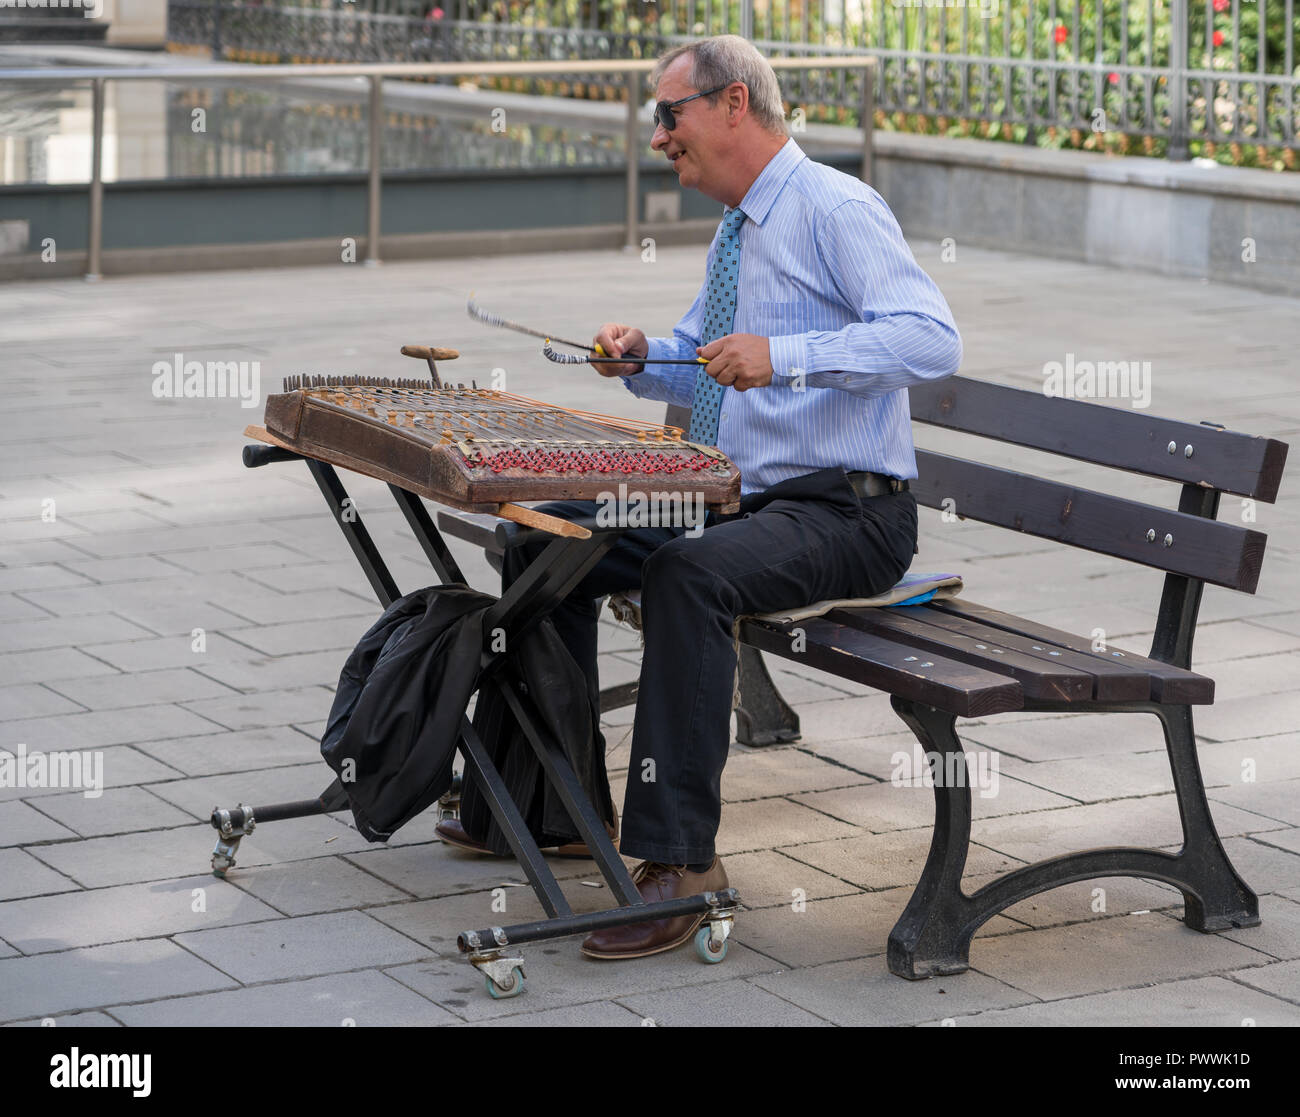 Bucarest/Roumanie - Septembre 21 : Homme jouant un instrument de musique ancienne à Bucarest Roumanie le 21 septembre 2018. Un homme non identifié Banque D'Images